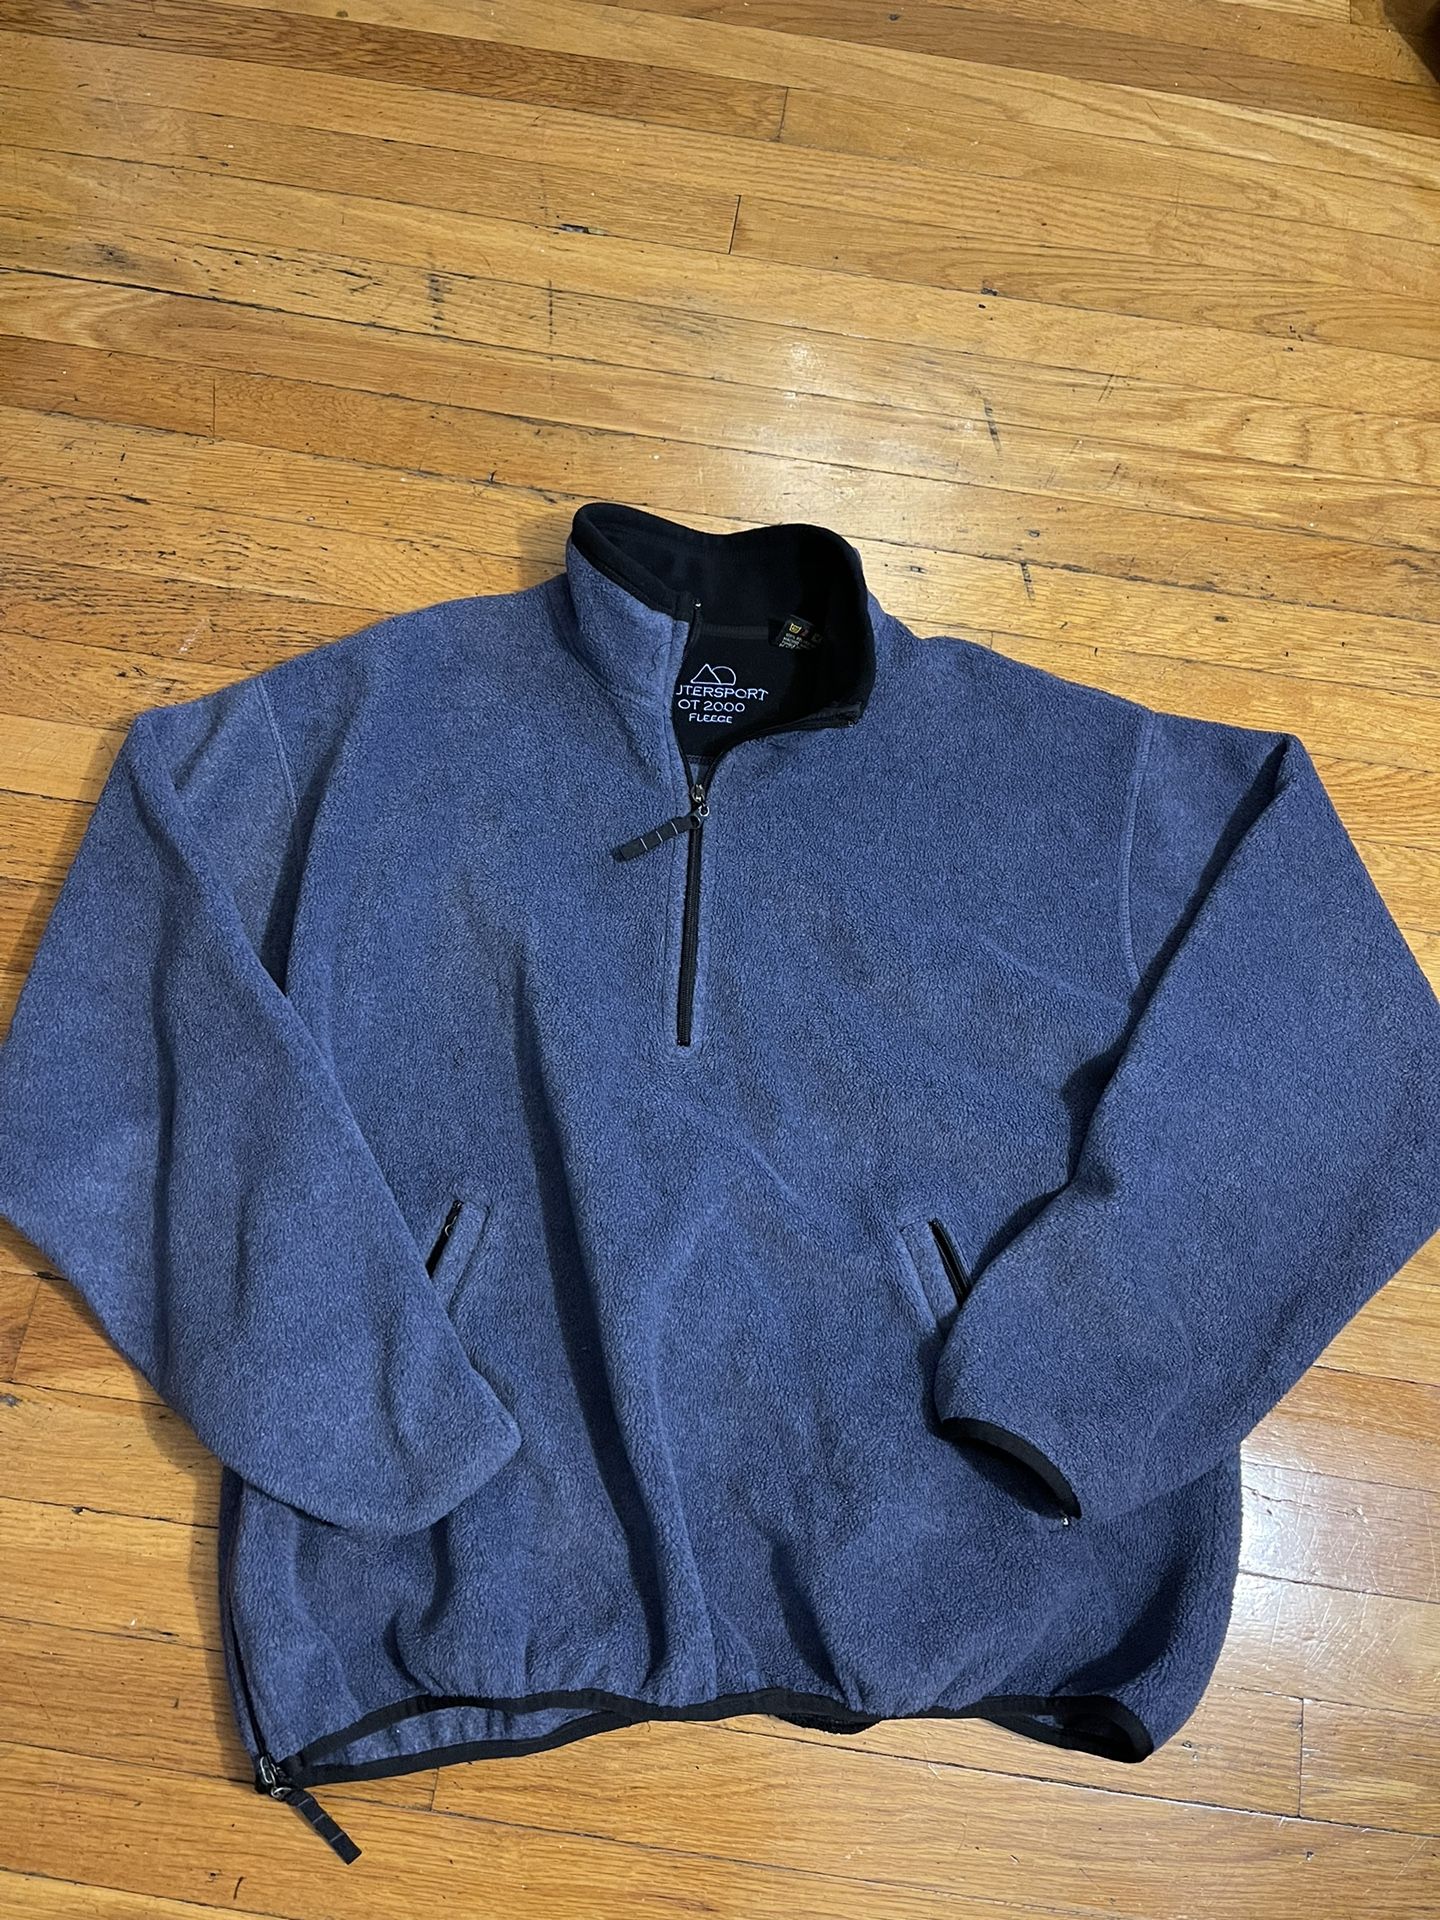 Outer sport  Blue Fleece 1/4 Zip Up Heavyweight Sweatshirt Men SZ MEDIUM